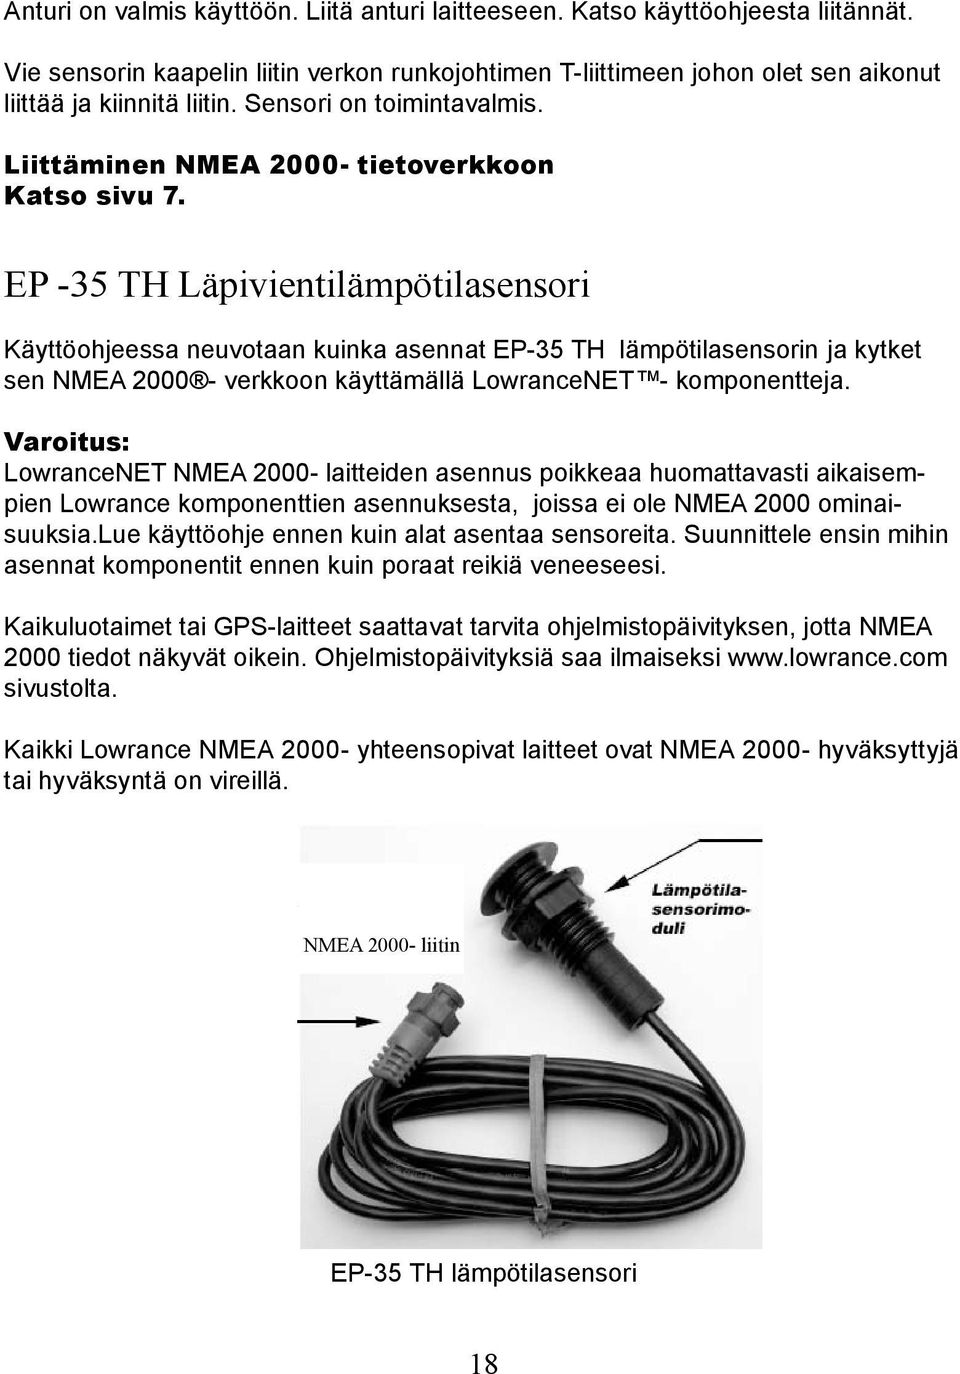 EP -35 TH Läpivientilämpötilasensori Käyttöohjeessa neuvotaan kuinka asennat EP-35 TH lämpötilasensorin ja kytket sen NMEA 2000 - verkkoon käyttämällä LowranceNET - komponentteja.